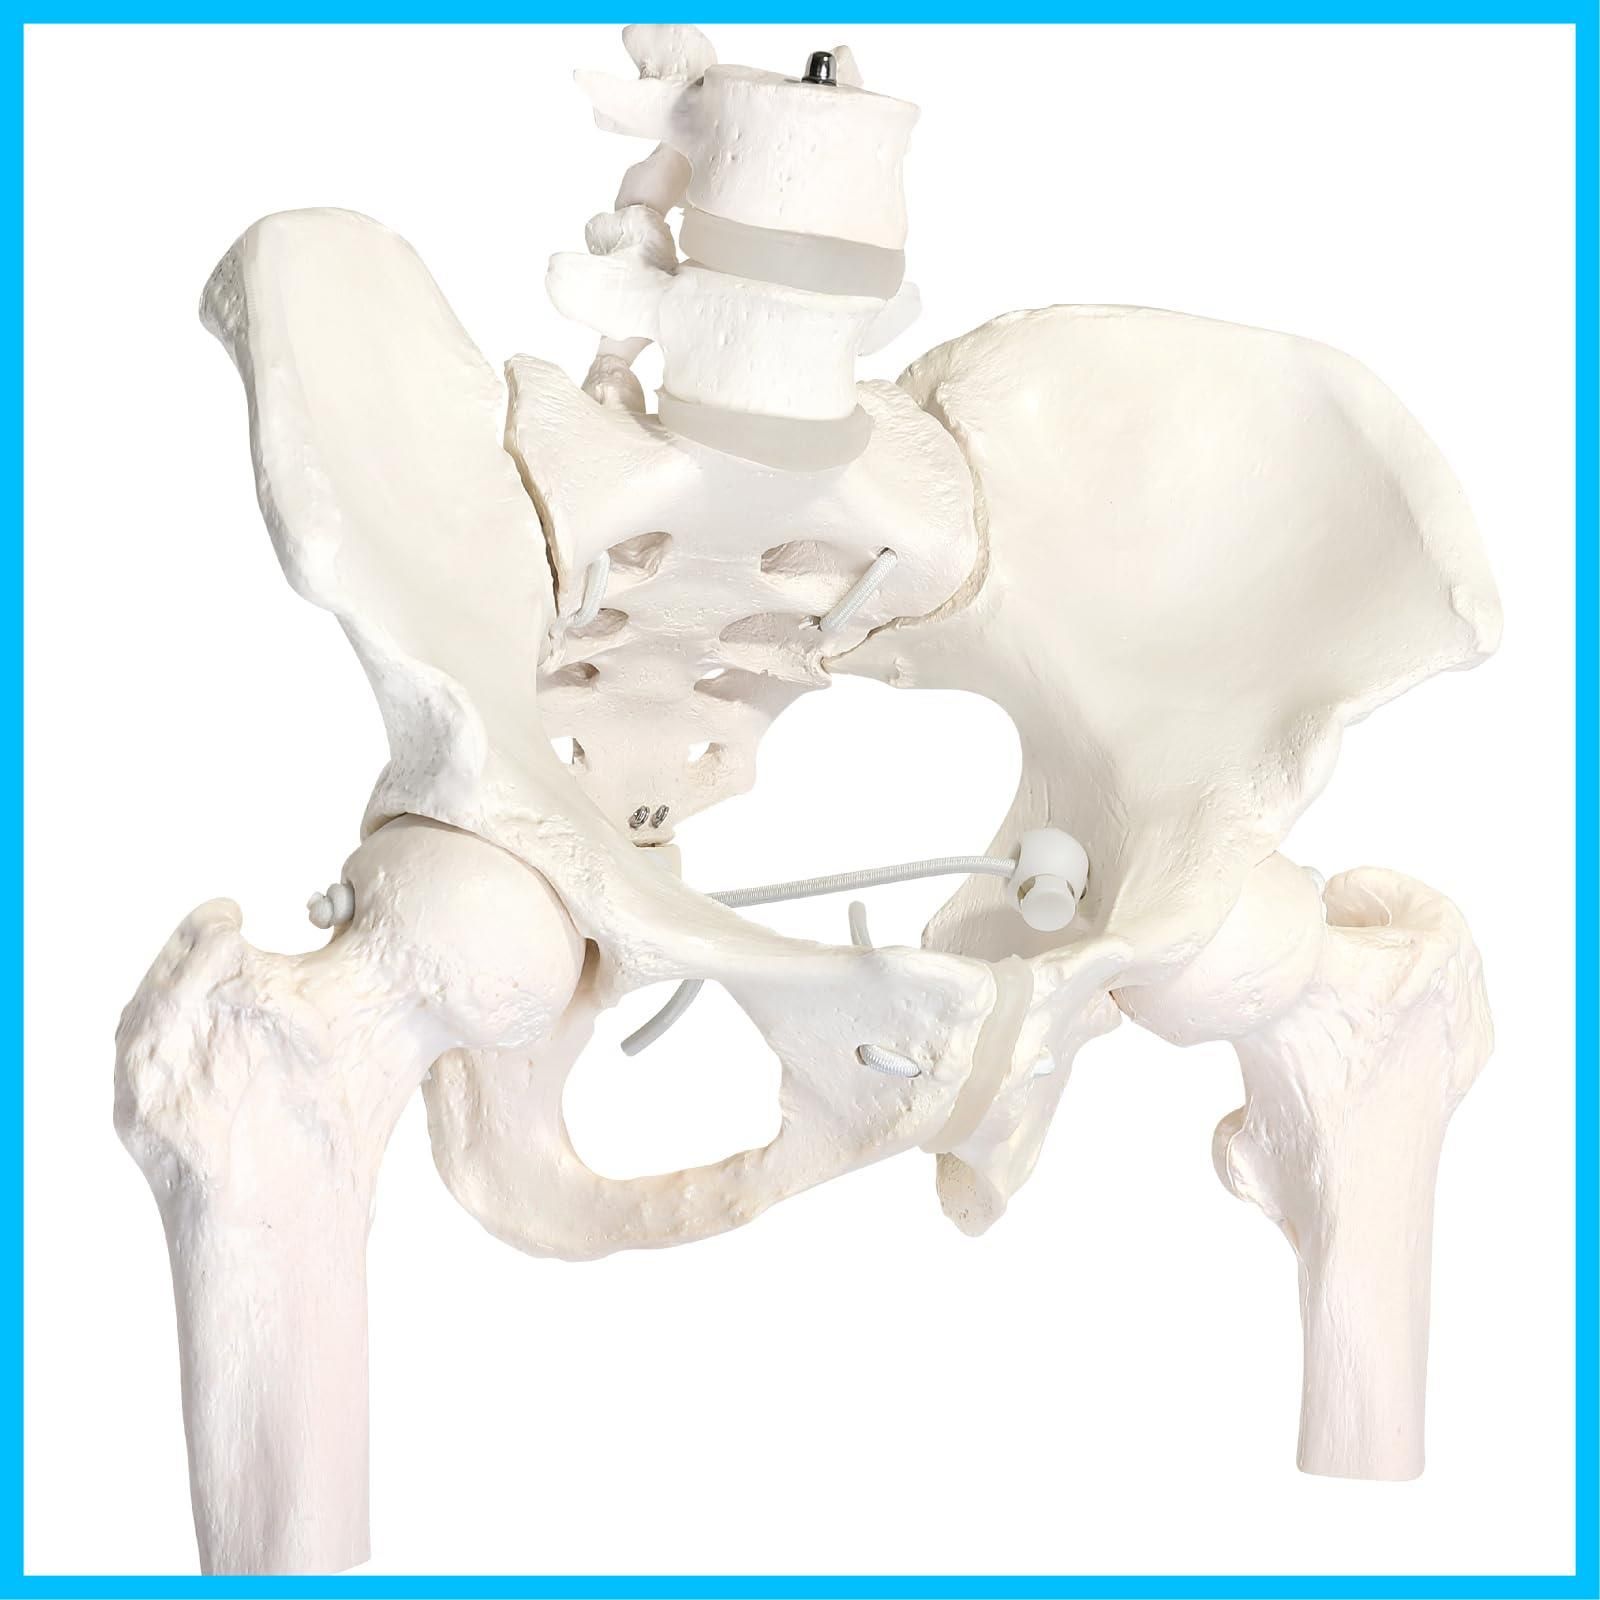 KIYOMARU グイッと動かせる大腿骨付き骨盤模型 人体模型 骨模型 理学 